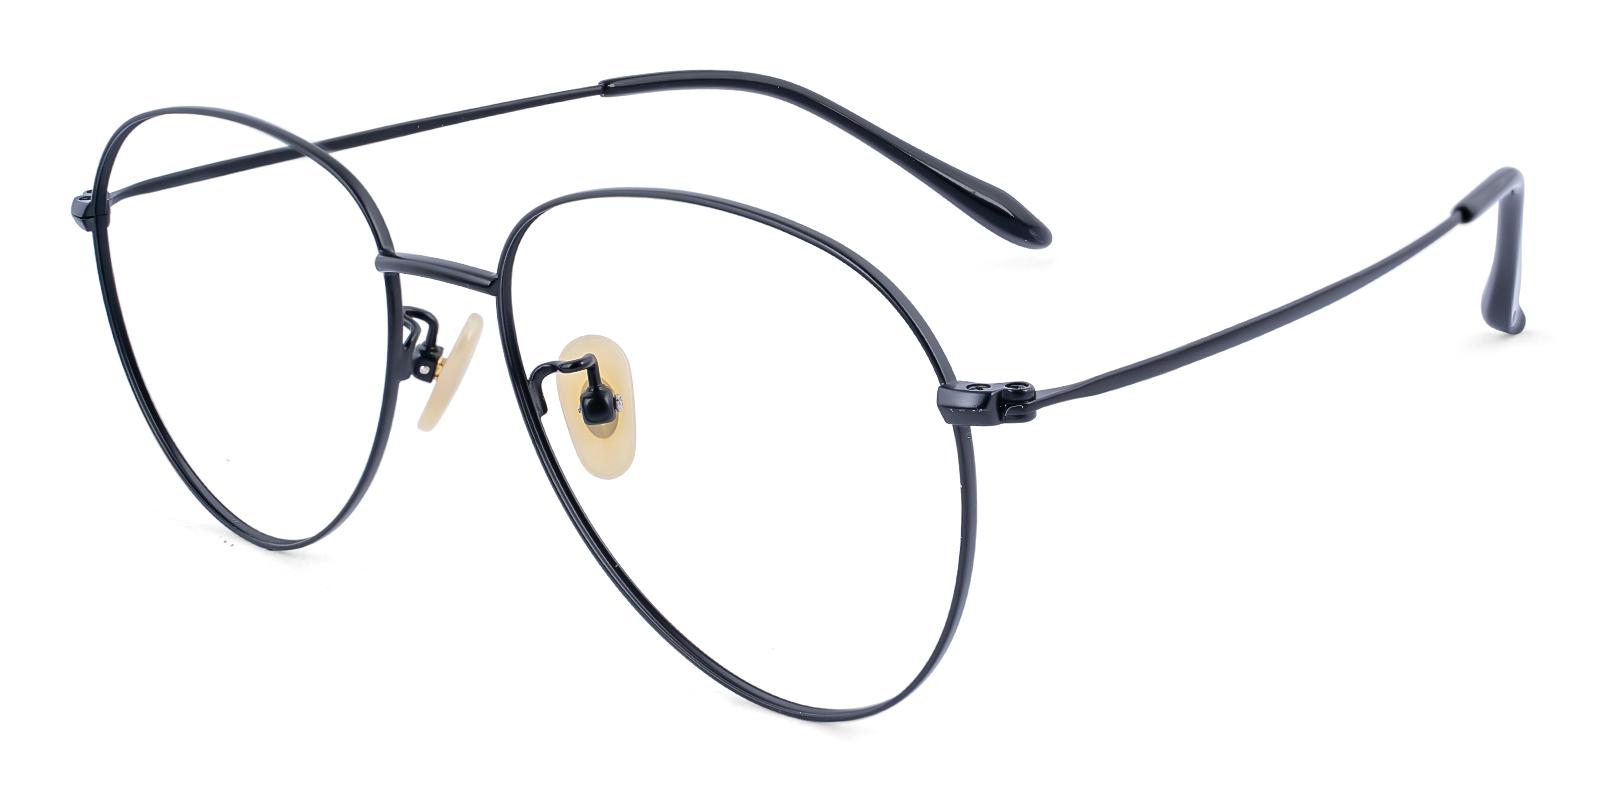 Nepal Black Titanium Eyeglasses , Lightweight , NosePads Frames from ABBE Glasses